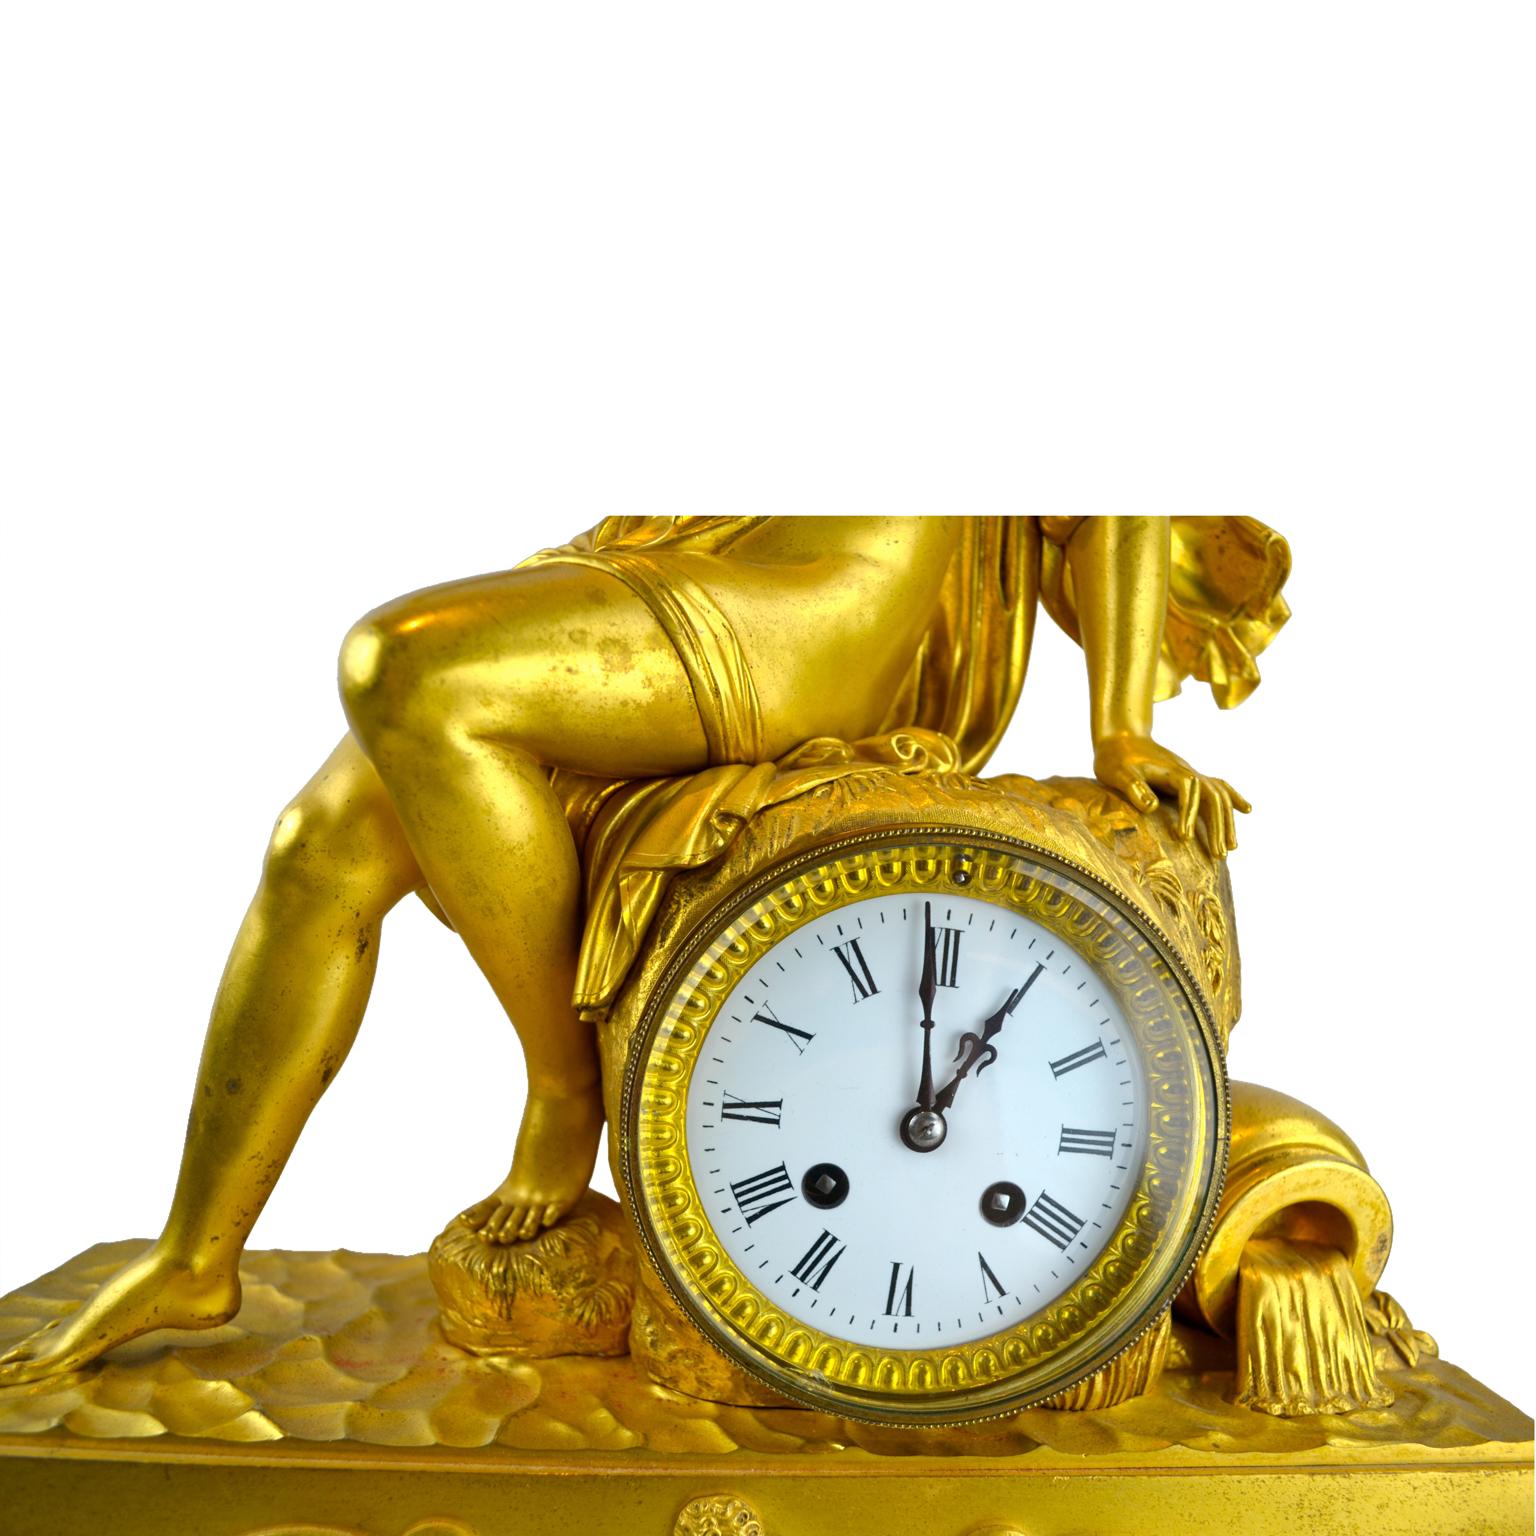 Eine vergoldete Bronzeuhr aus dem französischen Empire, die eine Allegorie auf die Wasserquelle der Erde darstellt. Auf dieser Uhr sitzt eine klassisch drapierte Nymphe auf einem Felsvorsprung, ihr rechter Fuß ruht auf dem Wasser. Rechts vom